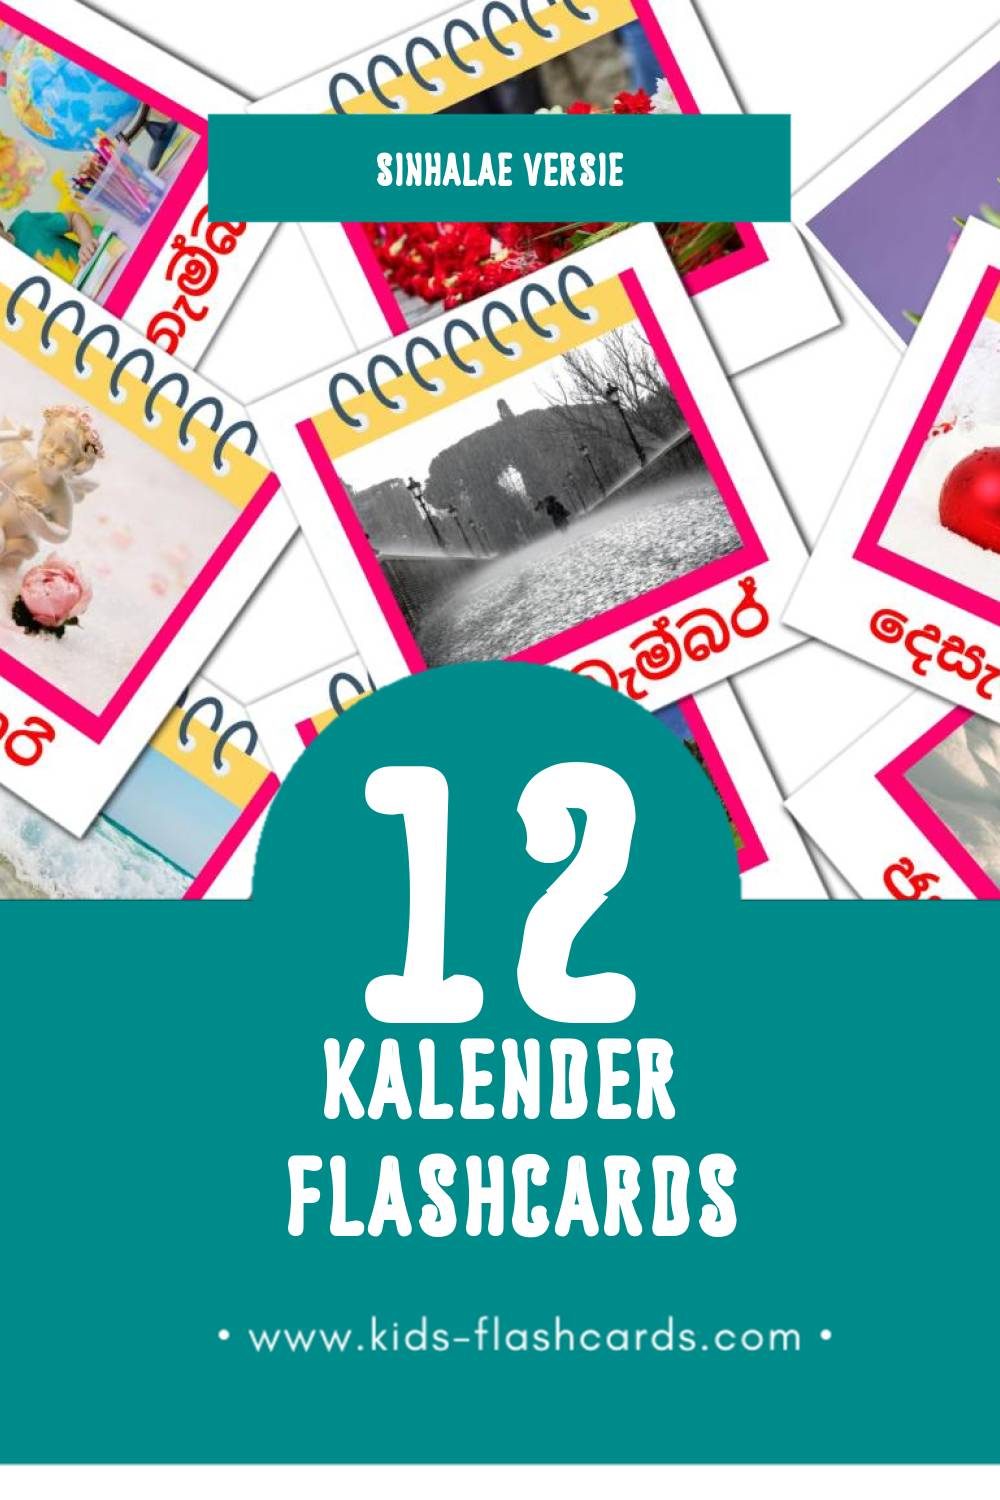 Visuele දින දර්ශනය  Flashcards voor Kleuters (12 kaarten in het Sinhala)